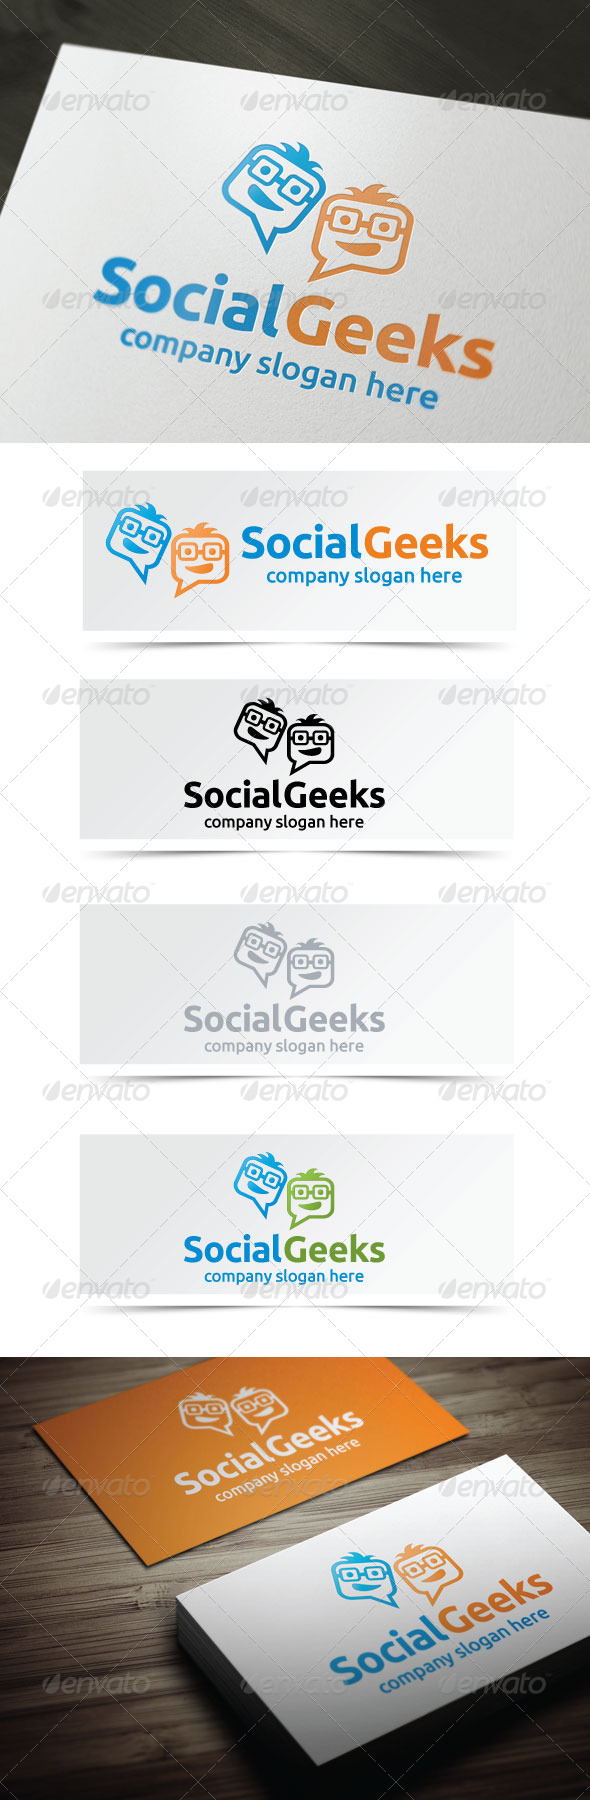 Social Geeks